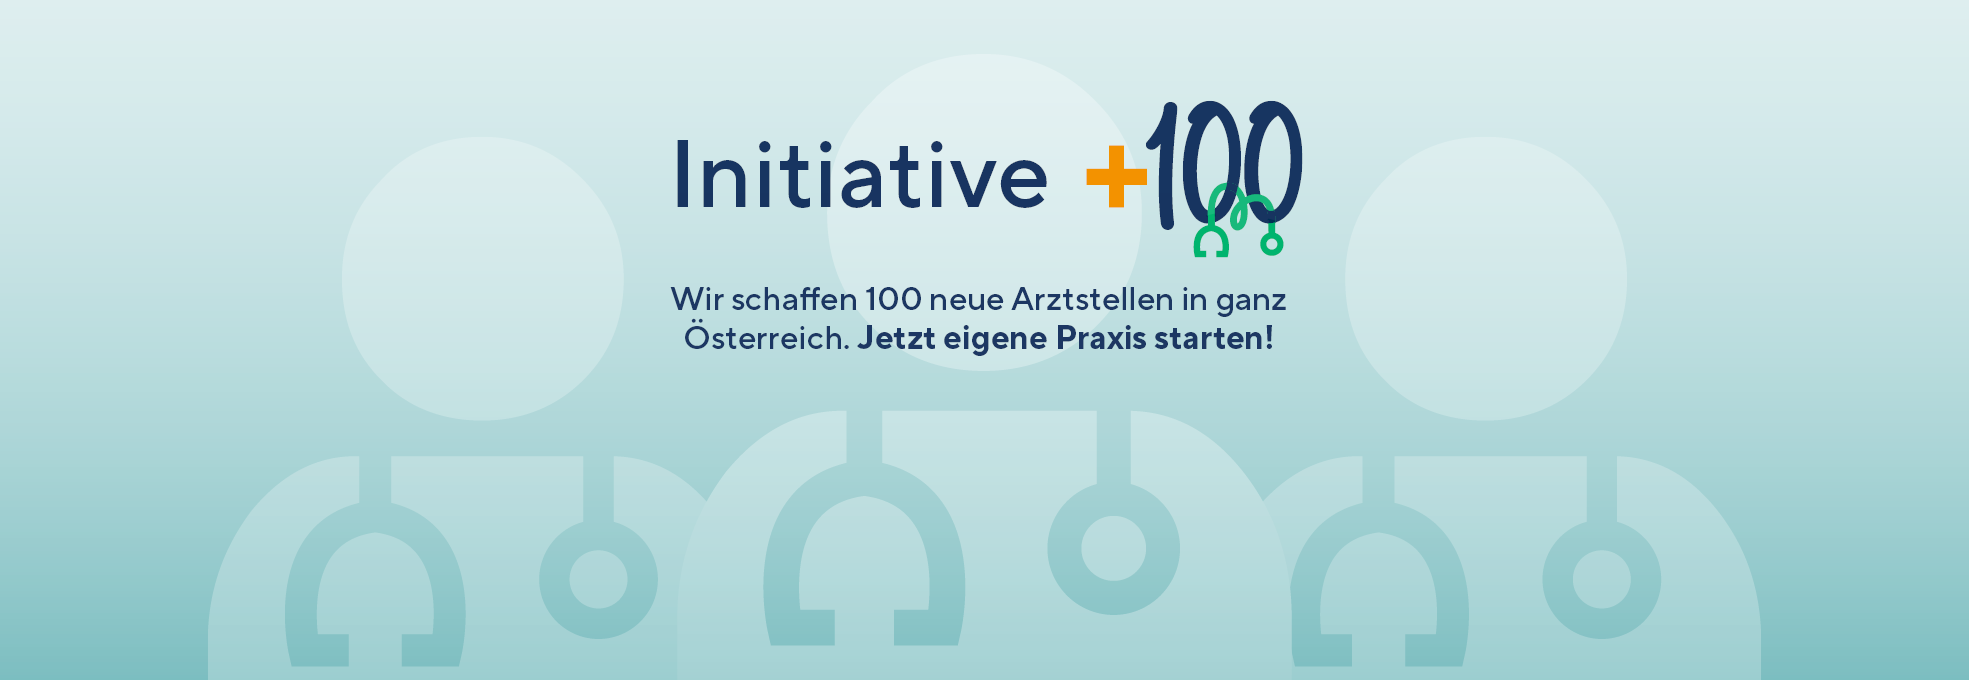 Initiative +100 - Wir schaffen 100 neue Arztstellen in ganz Österreich. Jetzt eigene Praxis starten!